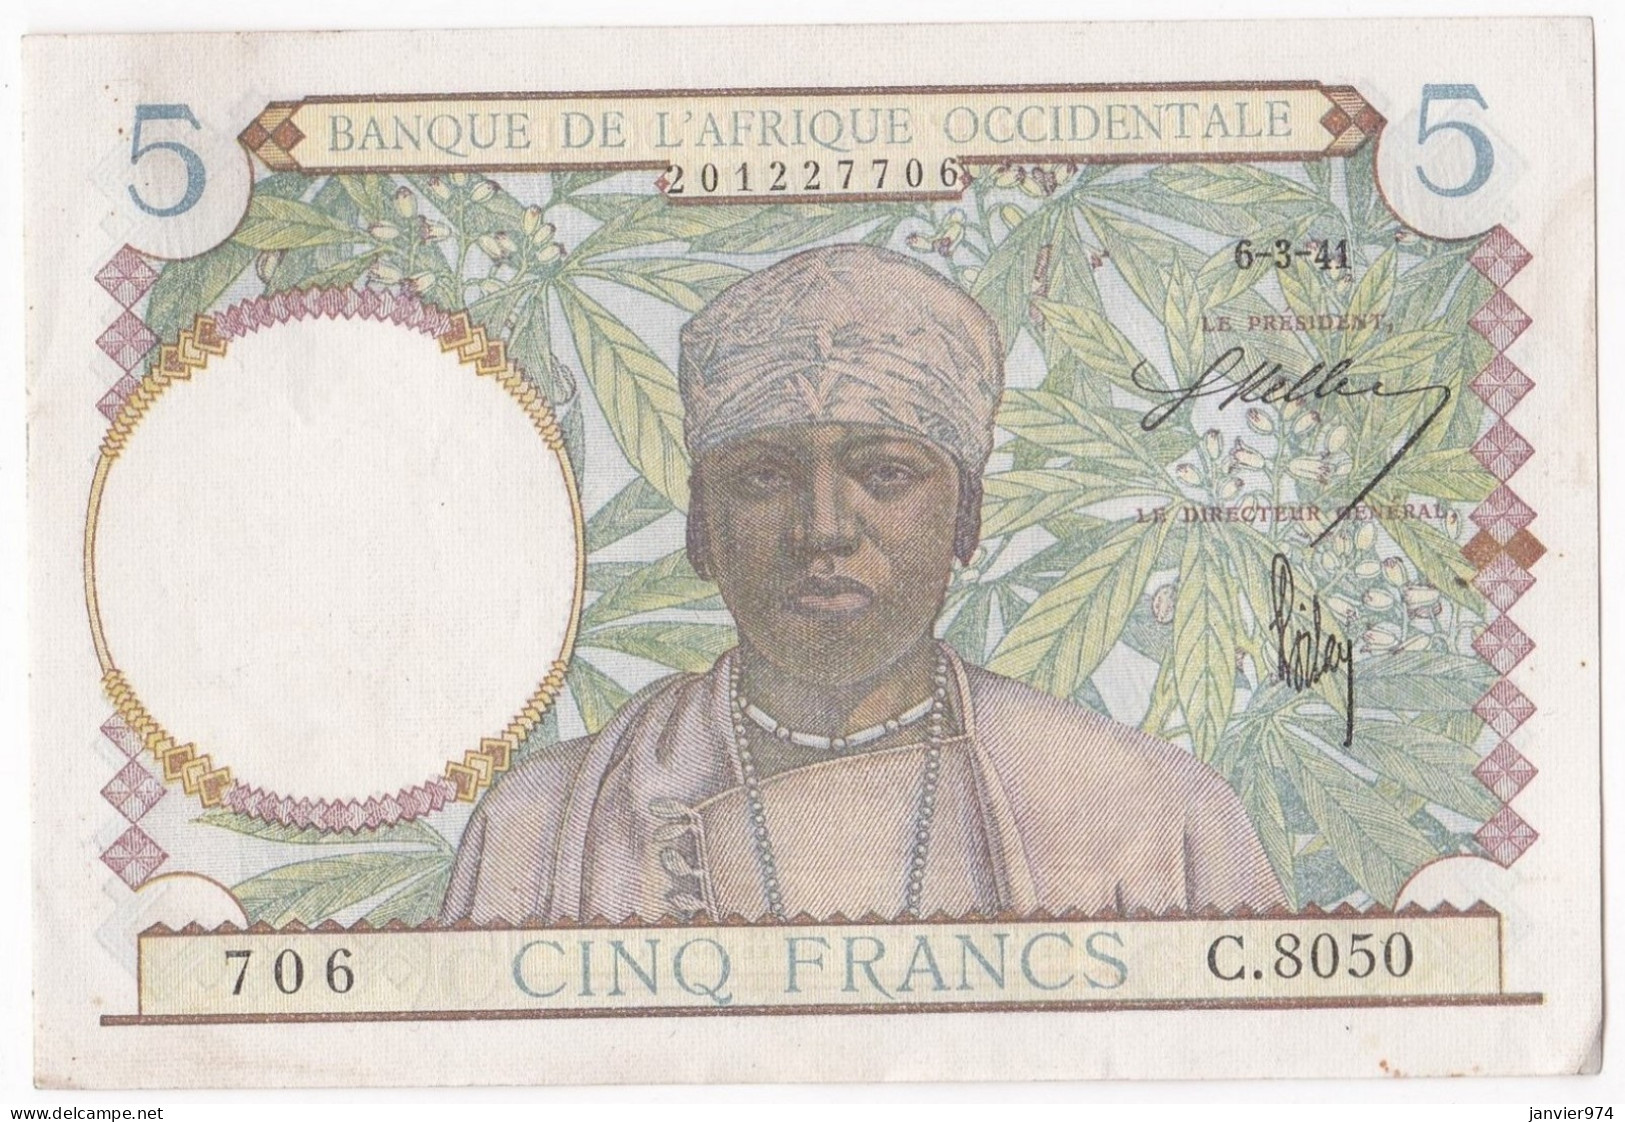 Banque De L'Afrique Occidentale 5 Francs 6 3 1941, Alph : C 8050 N° 706, Non Circuler, Avec Son Craquant D’origine - Autres - Afrique